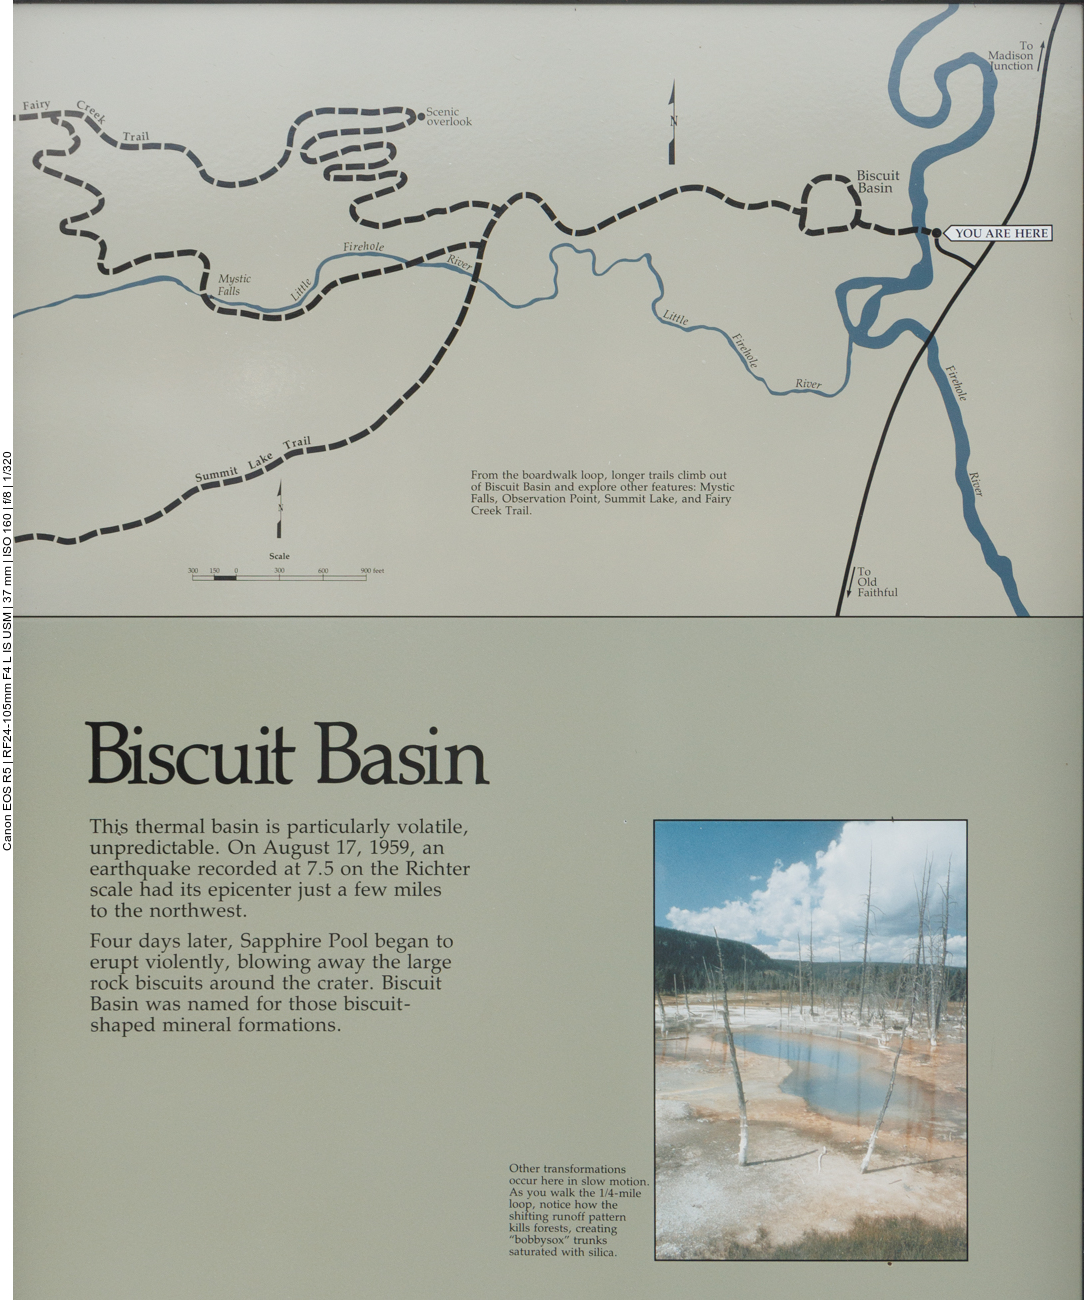 Nun sind wir am Biscuit Basin 